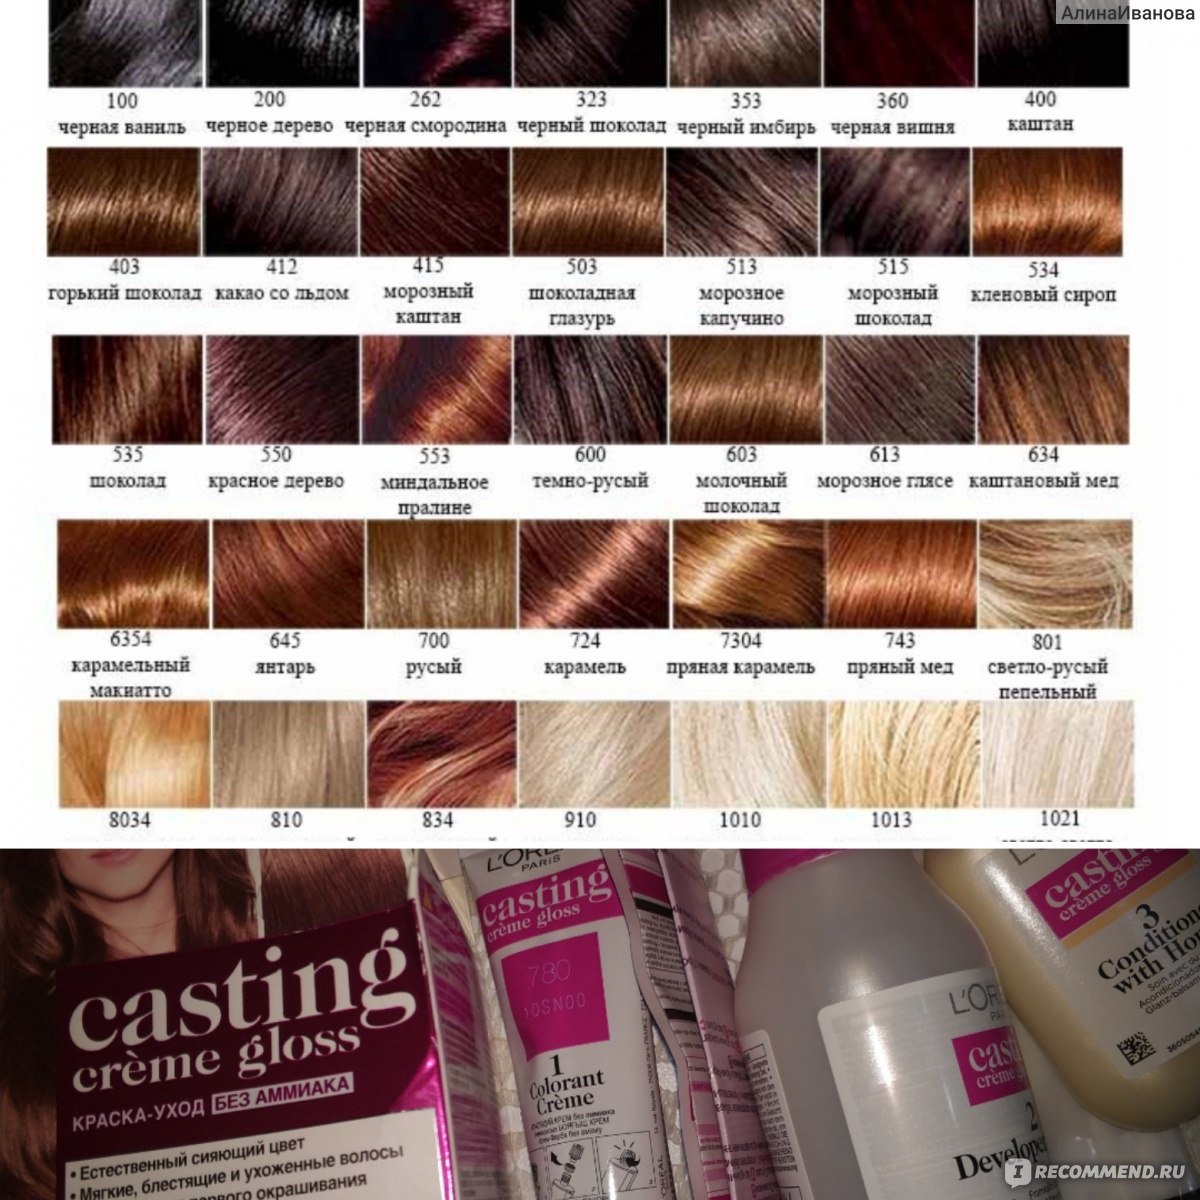 Какие есть оттенки краски для волос лореаль кастинг